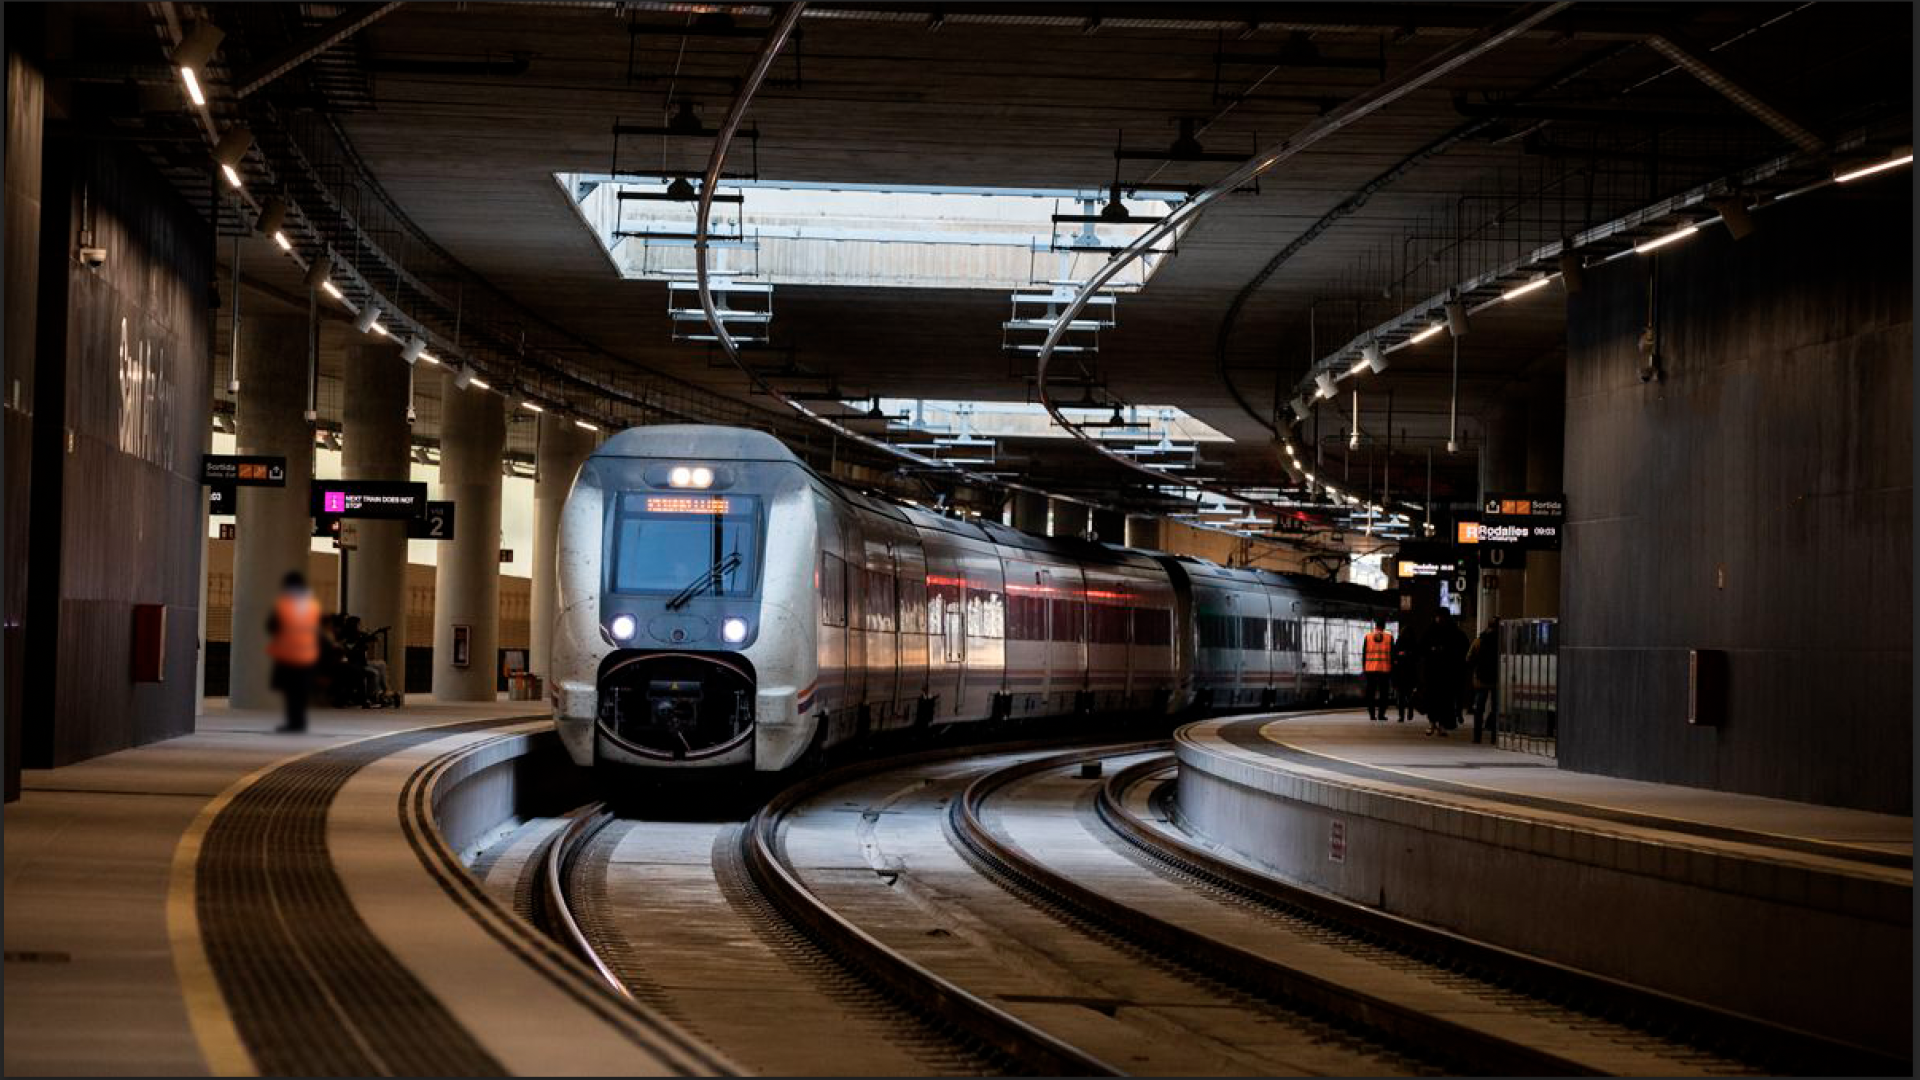 Ferrocarril Metropolitano de Barcelona confía en ONDOAN la reparación de averías complejas en sus sistemas de ventilación